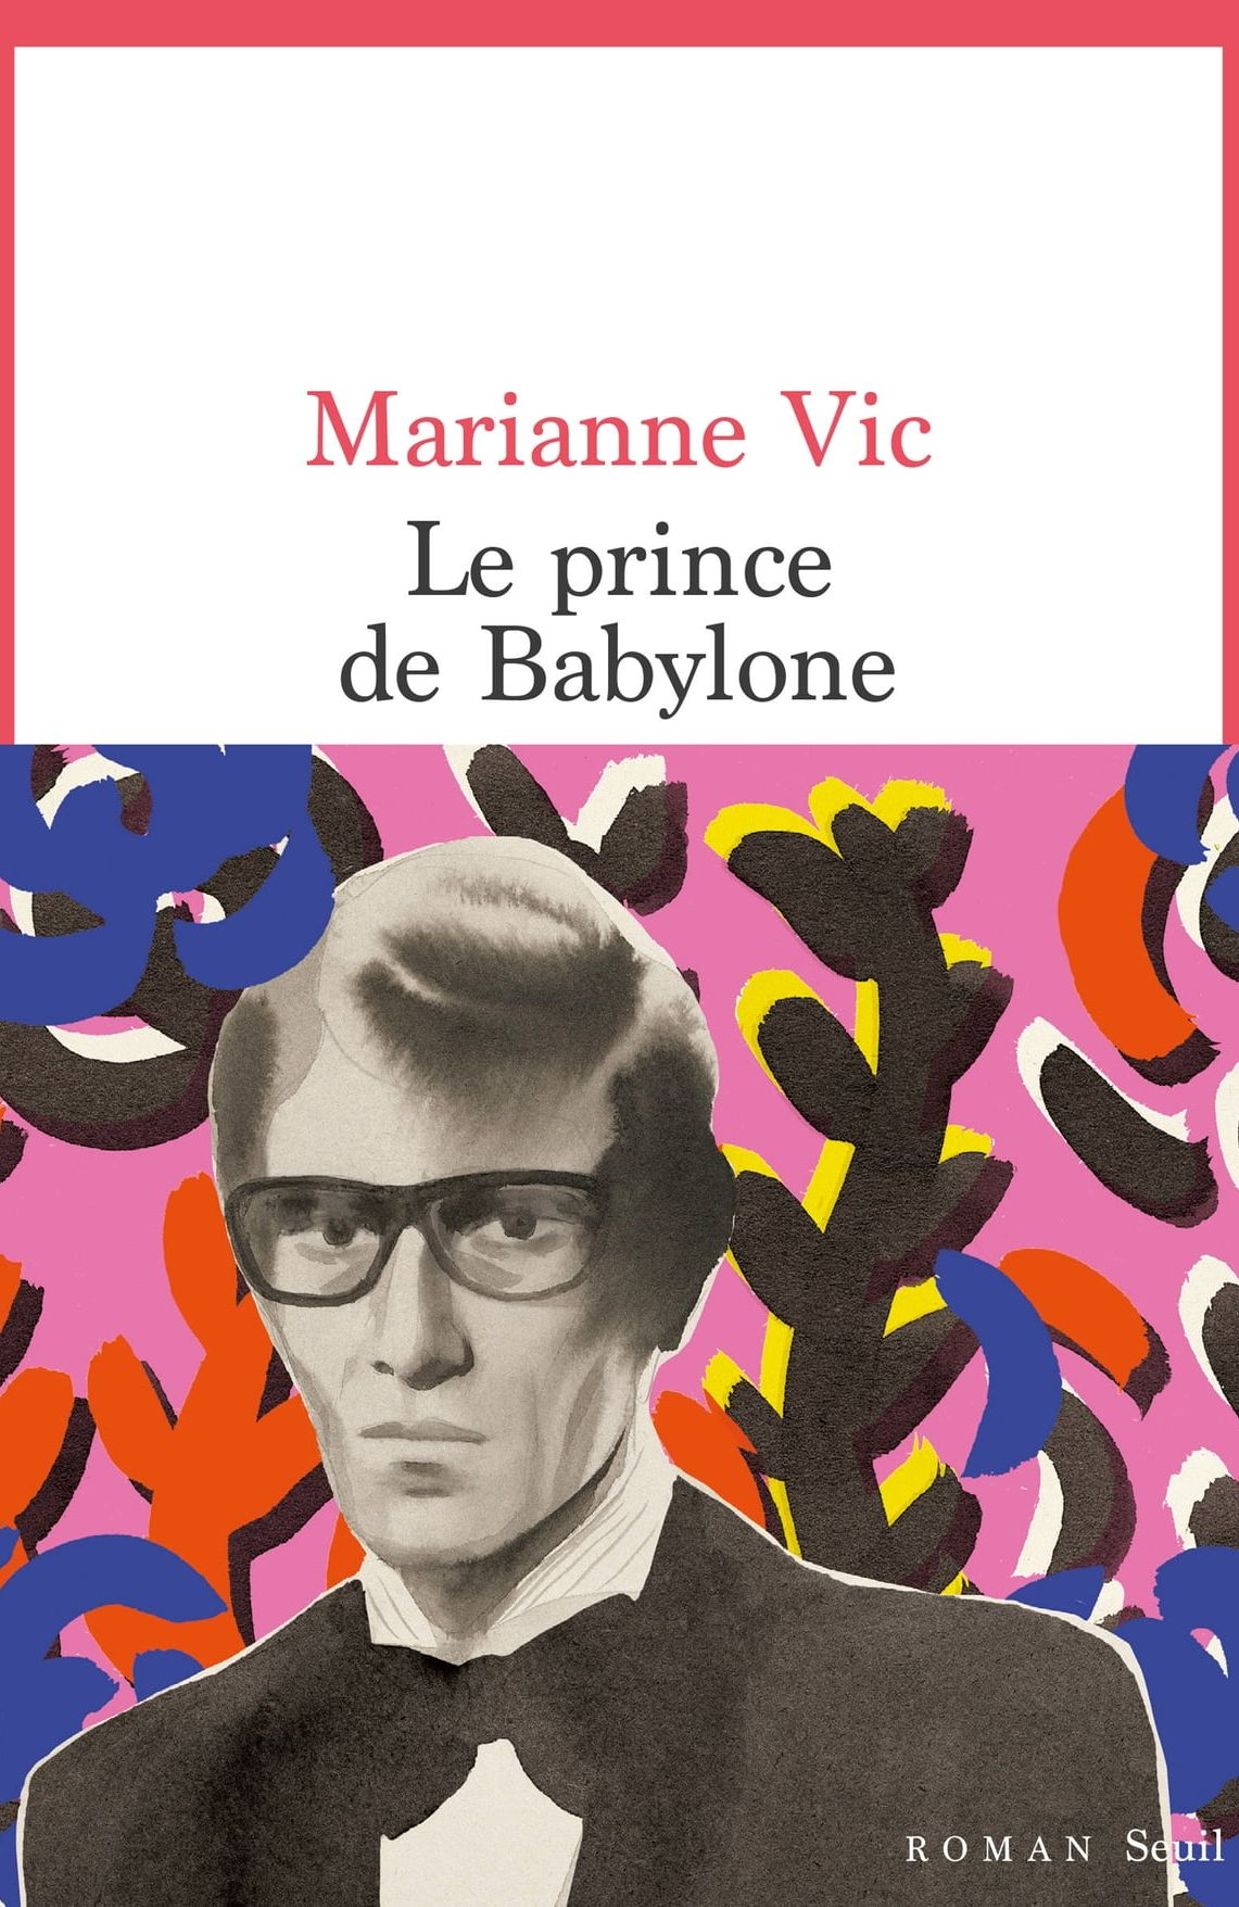 Si le livre de Marianne Vic s’intitule Prince de Babylone, c’est parce qu’Yves Saint Laurent a vécu rue de Babylone à Paris.